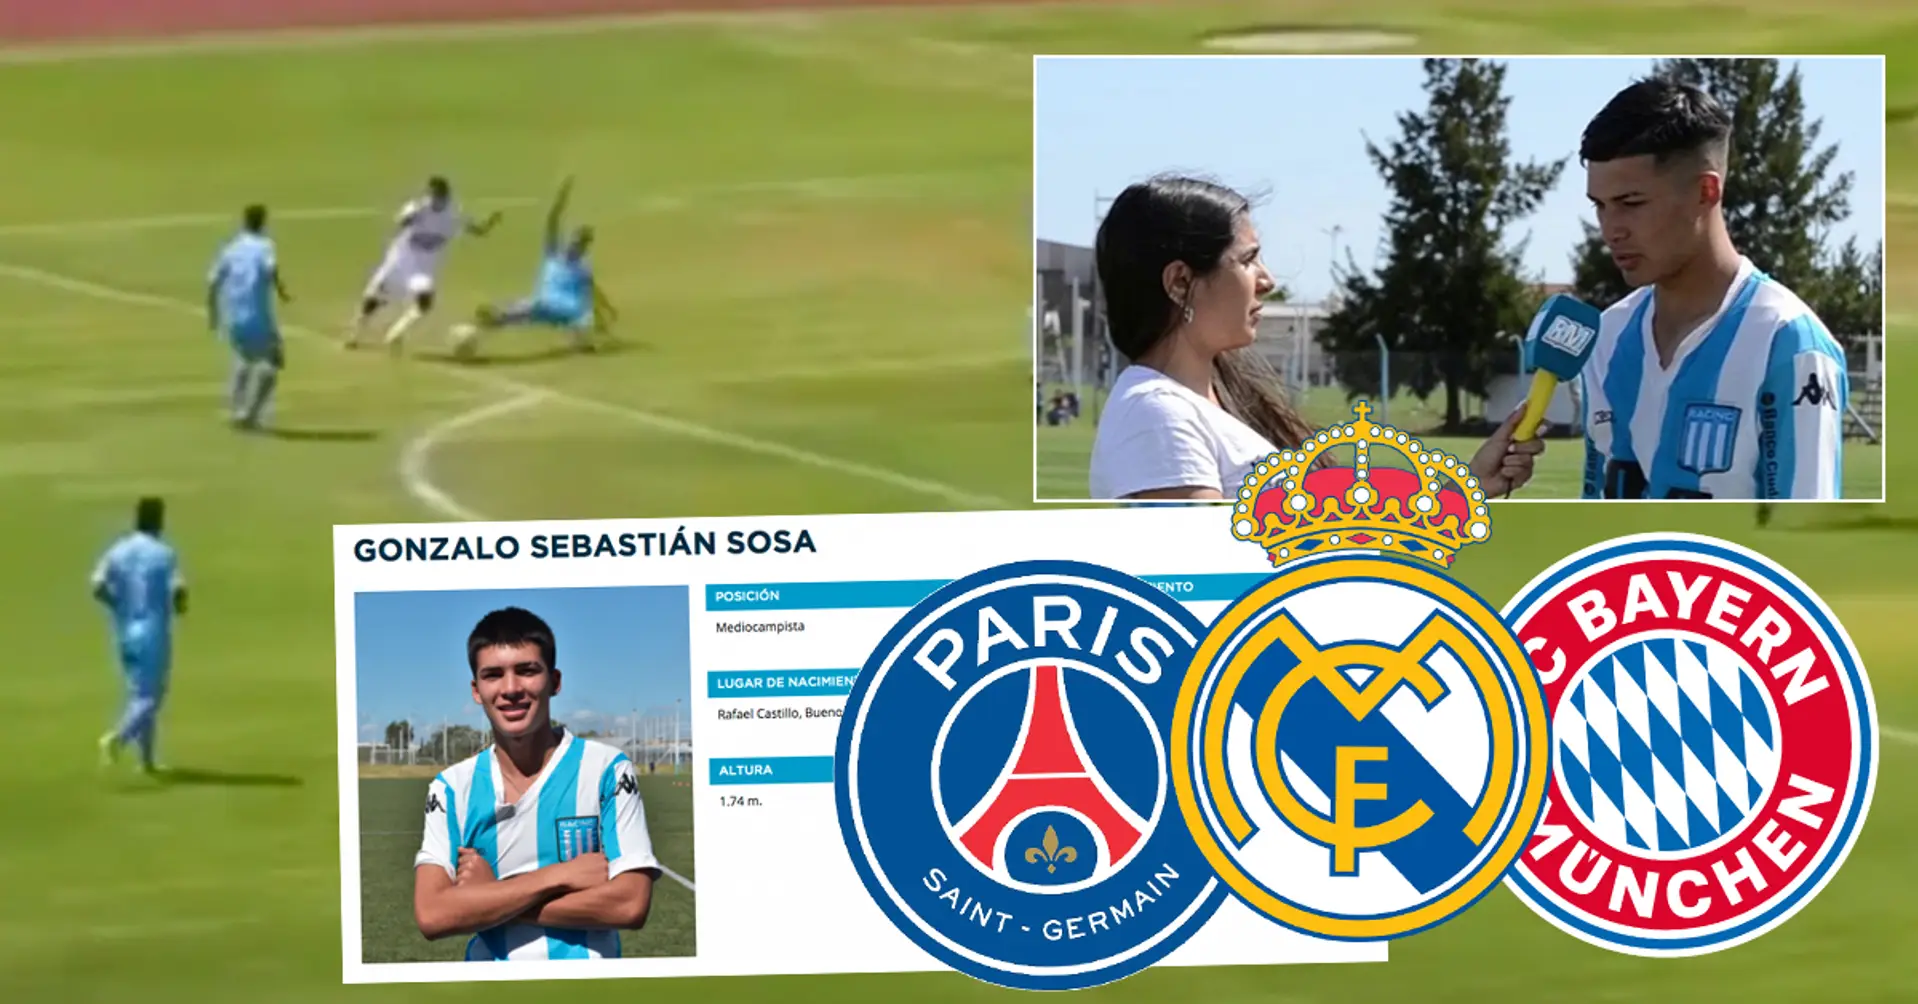 PSG, Bayern und Real Madrid kämpfen um 15-jähriges argentinisches Wunderkind Gonzalo "Den Talentierten" Sosa